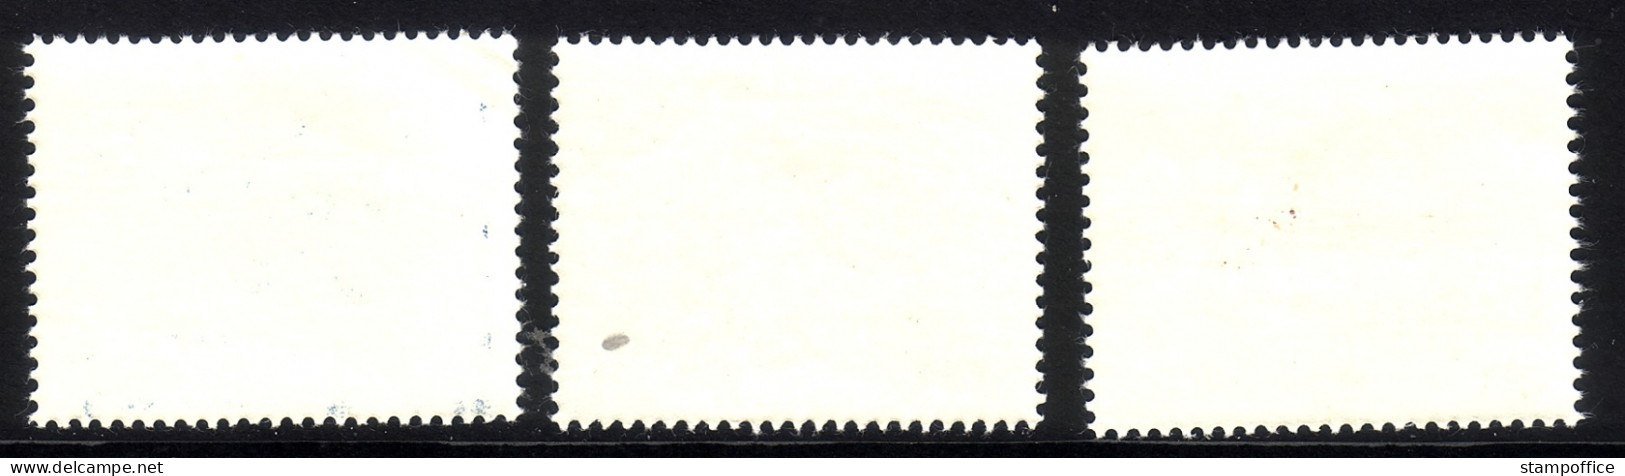 PORTUGAL MI-NR. 990-992 POSTFRISCH(MINT) EUROPA 1965 - 2. Wahl - 1965